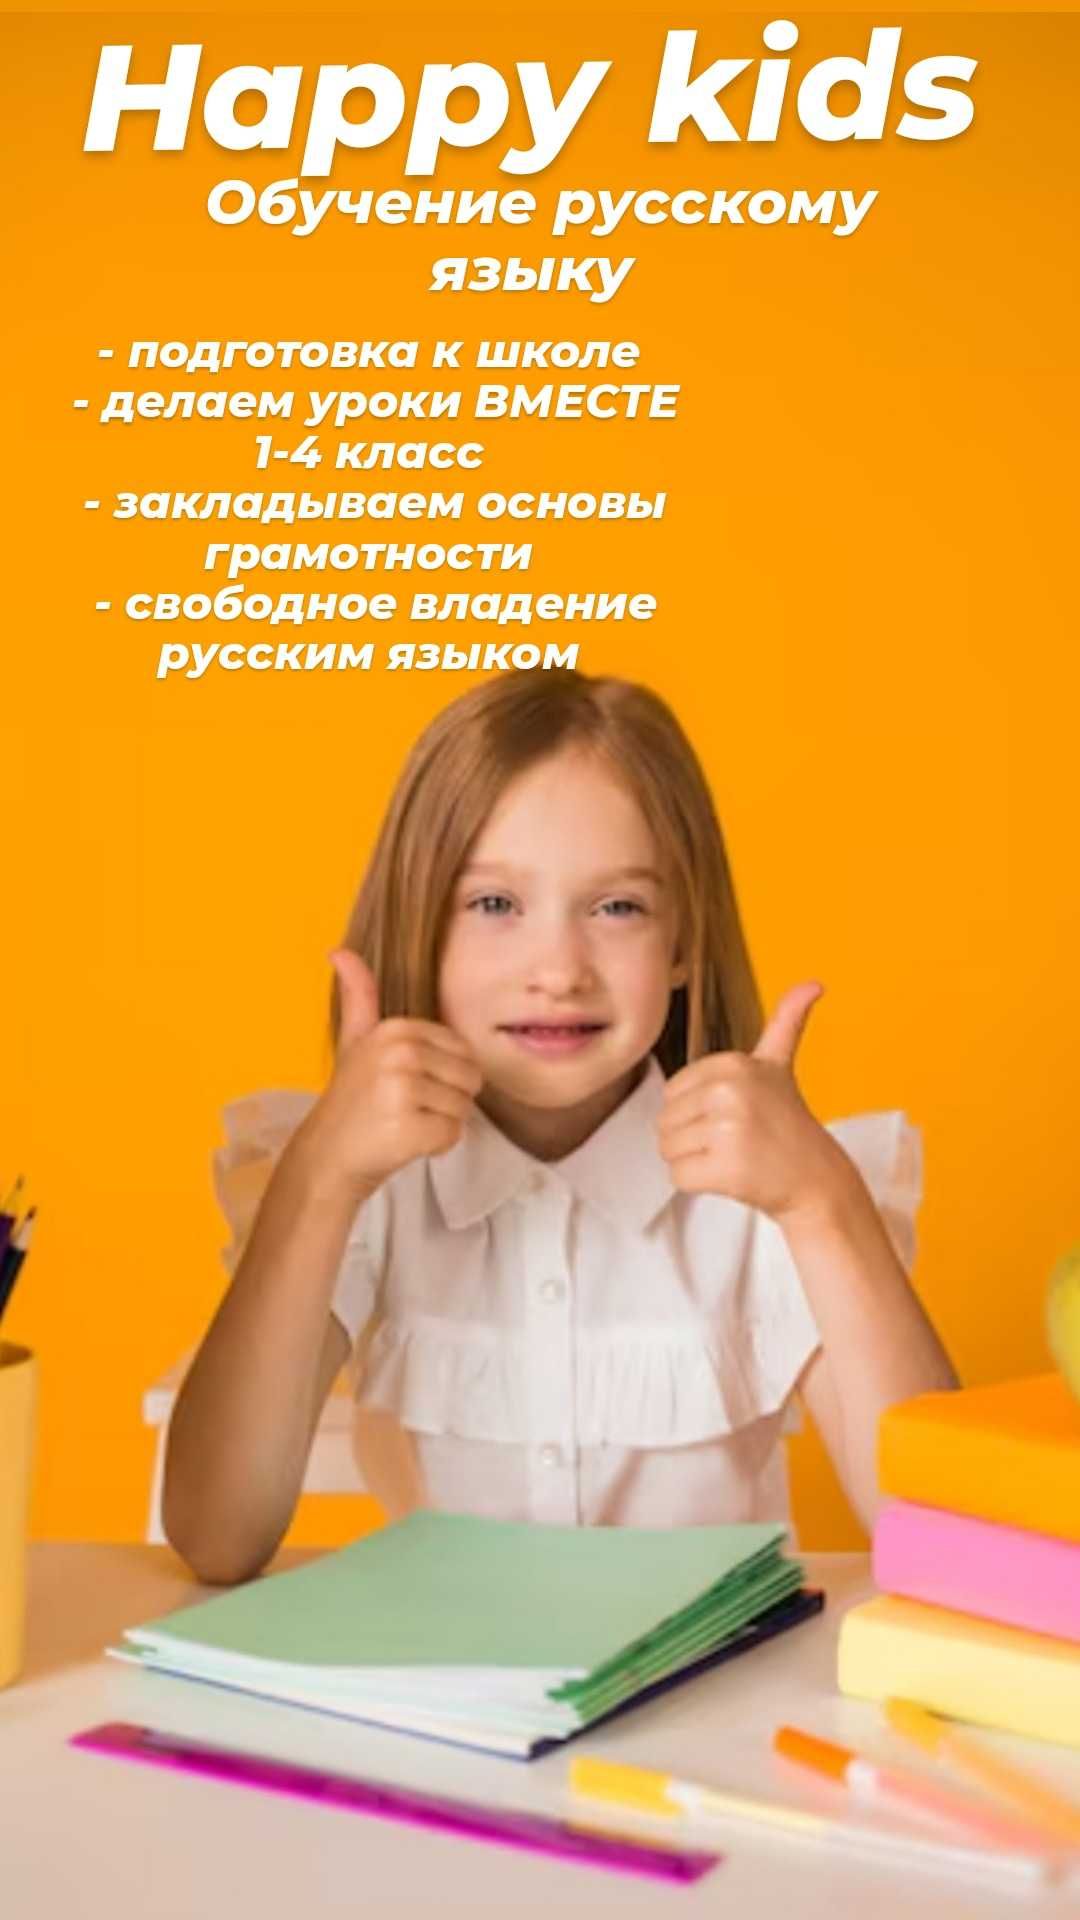 Happy kids ( обучение русскому языку)